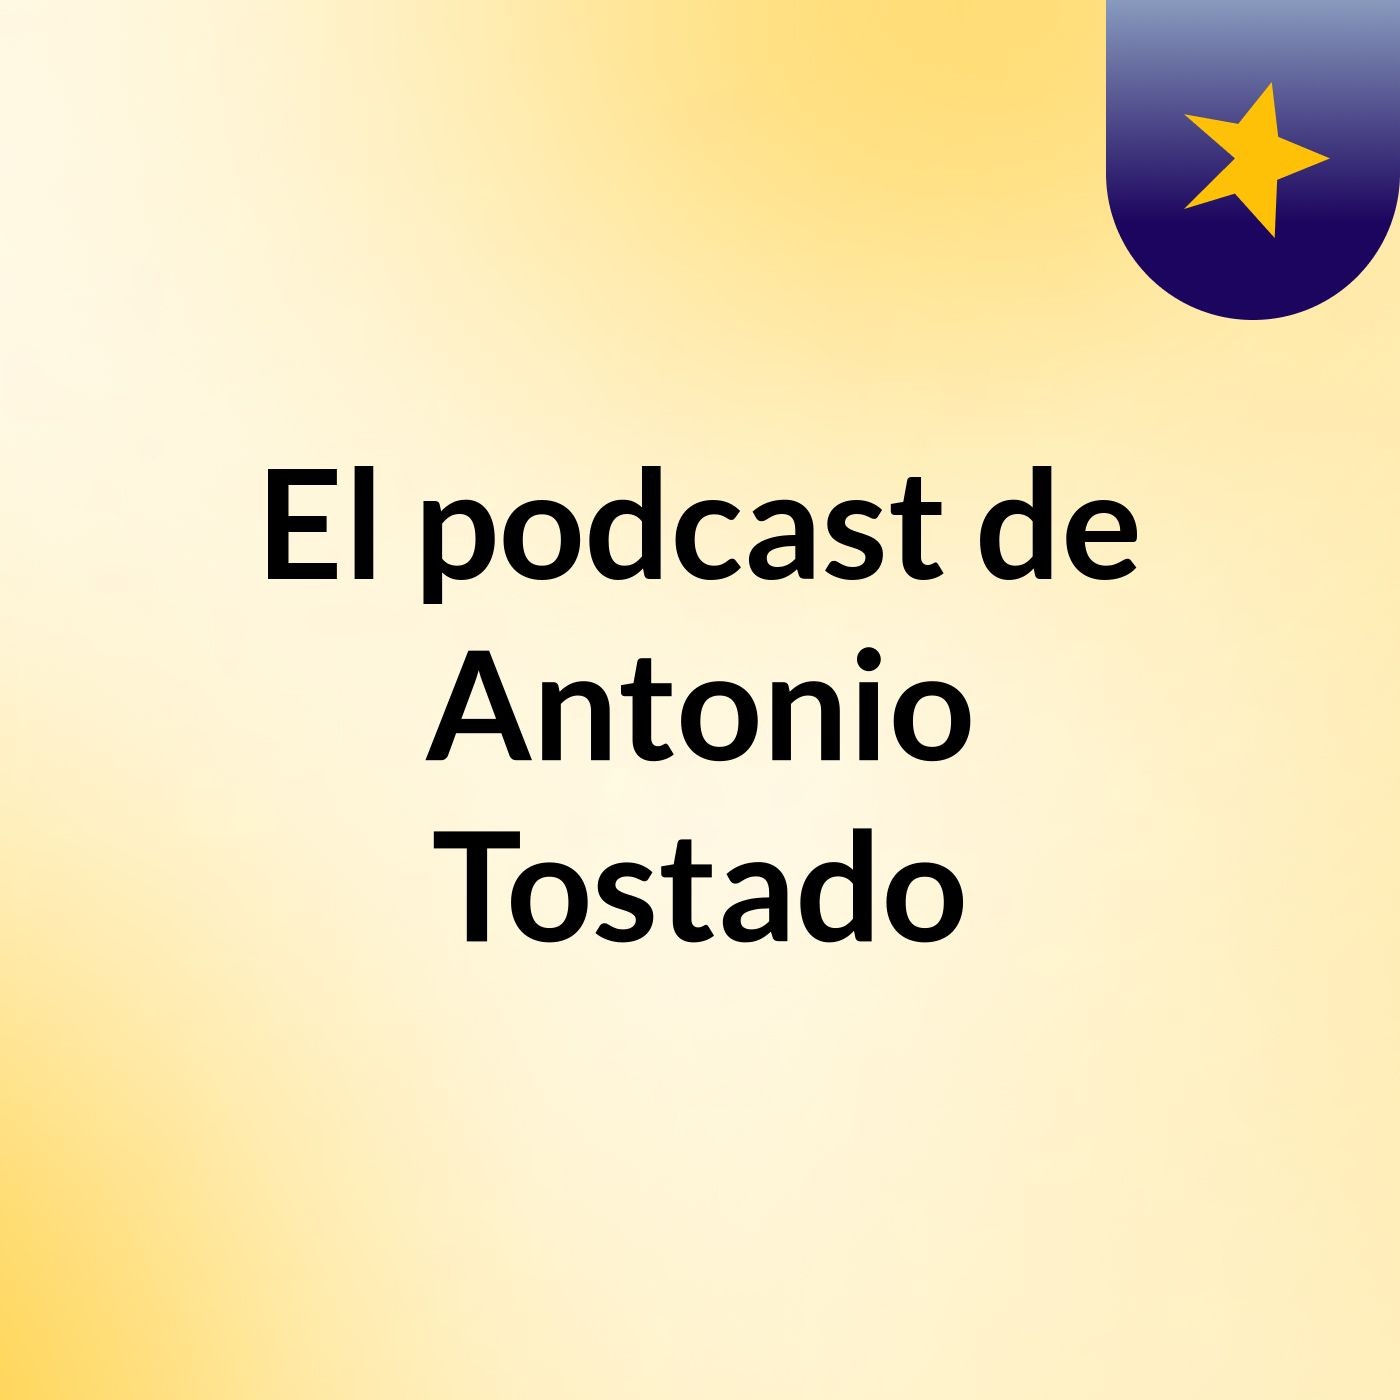 Episodio 2 - El podcast de Antonio Tostado